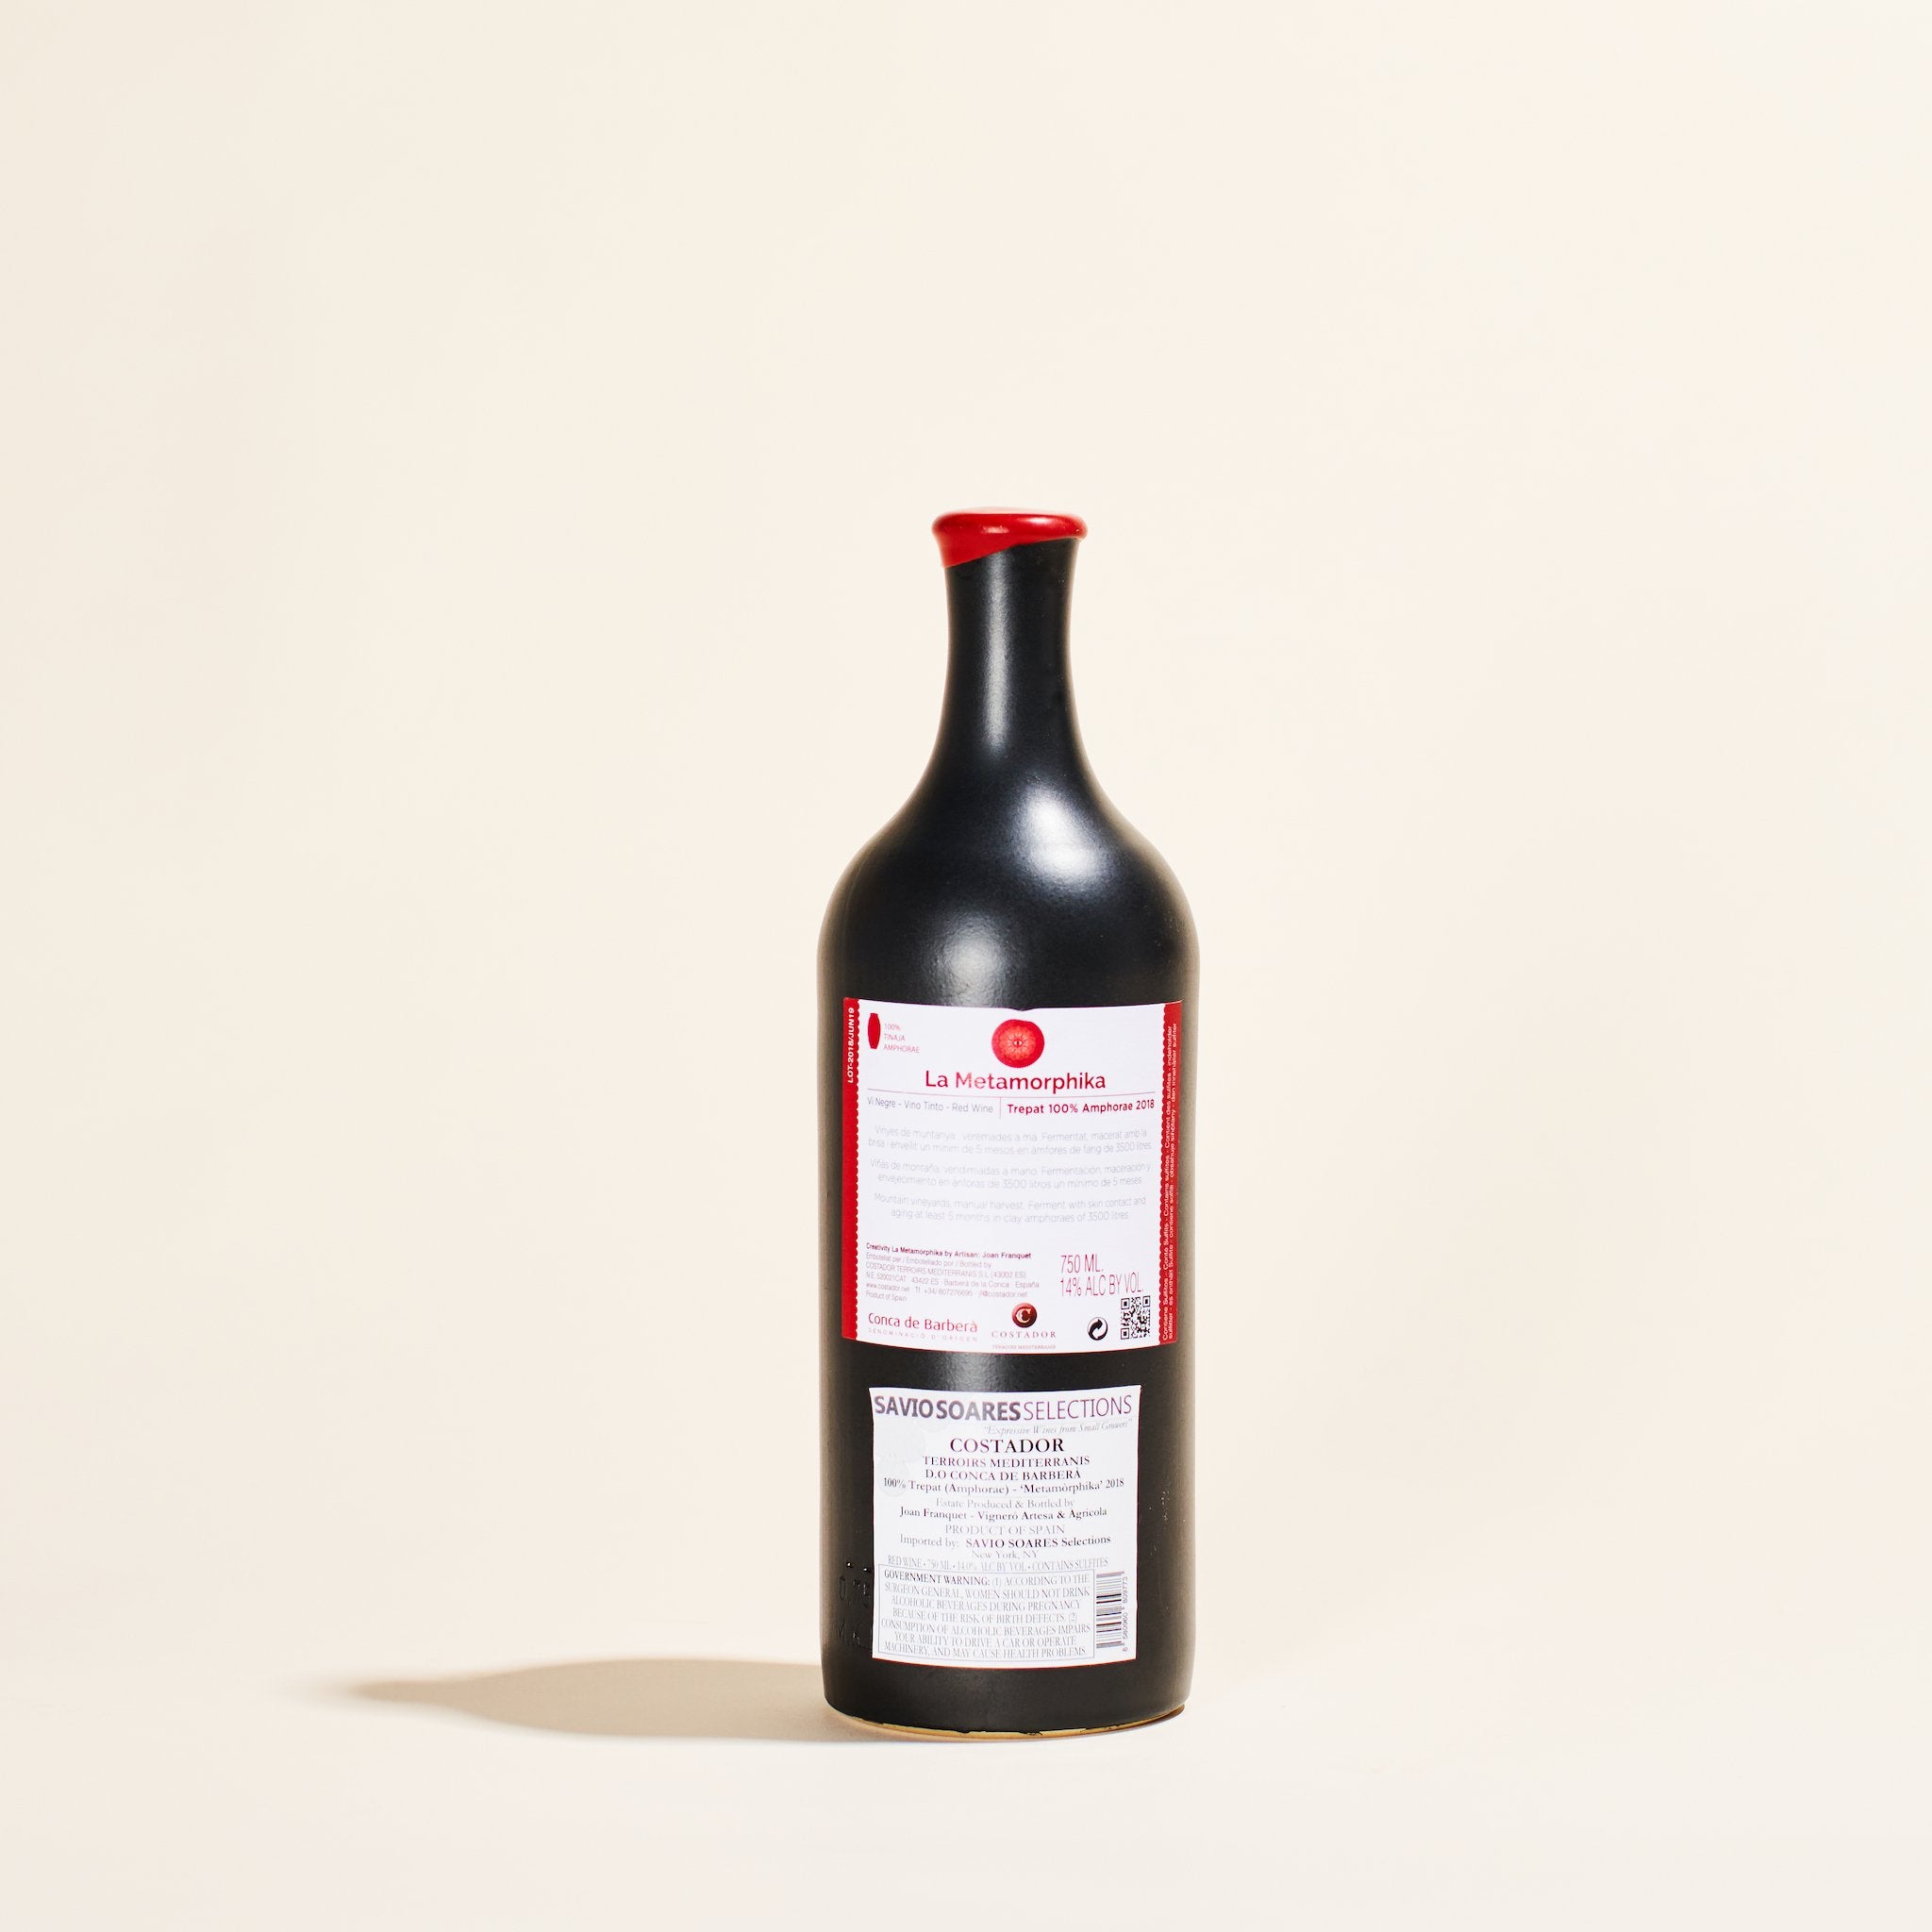 natural red wine metamorphika trepat amphora costador catalunya spain